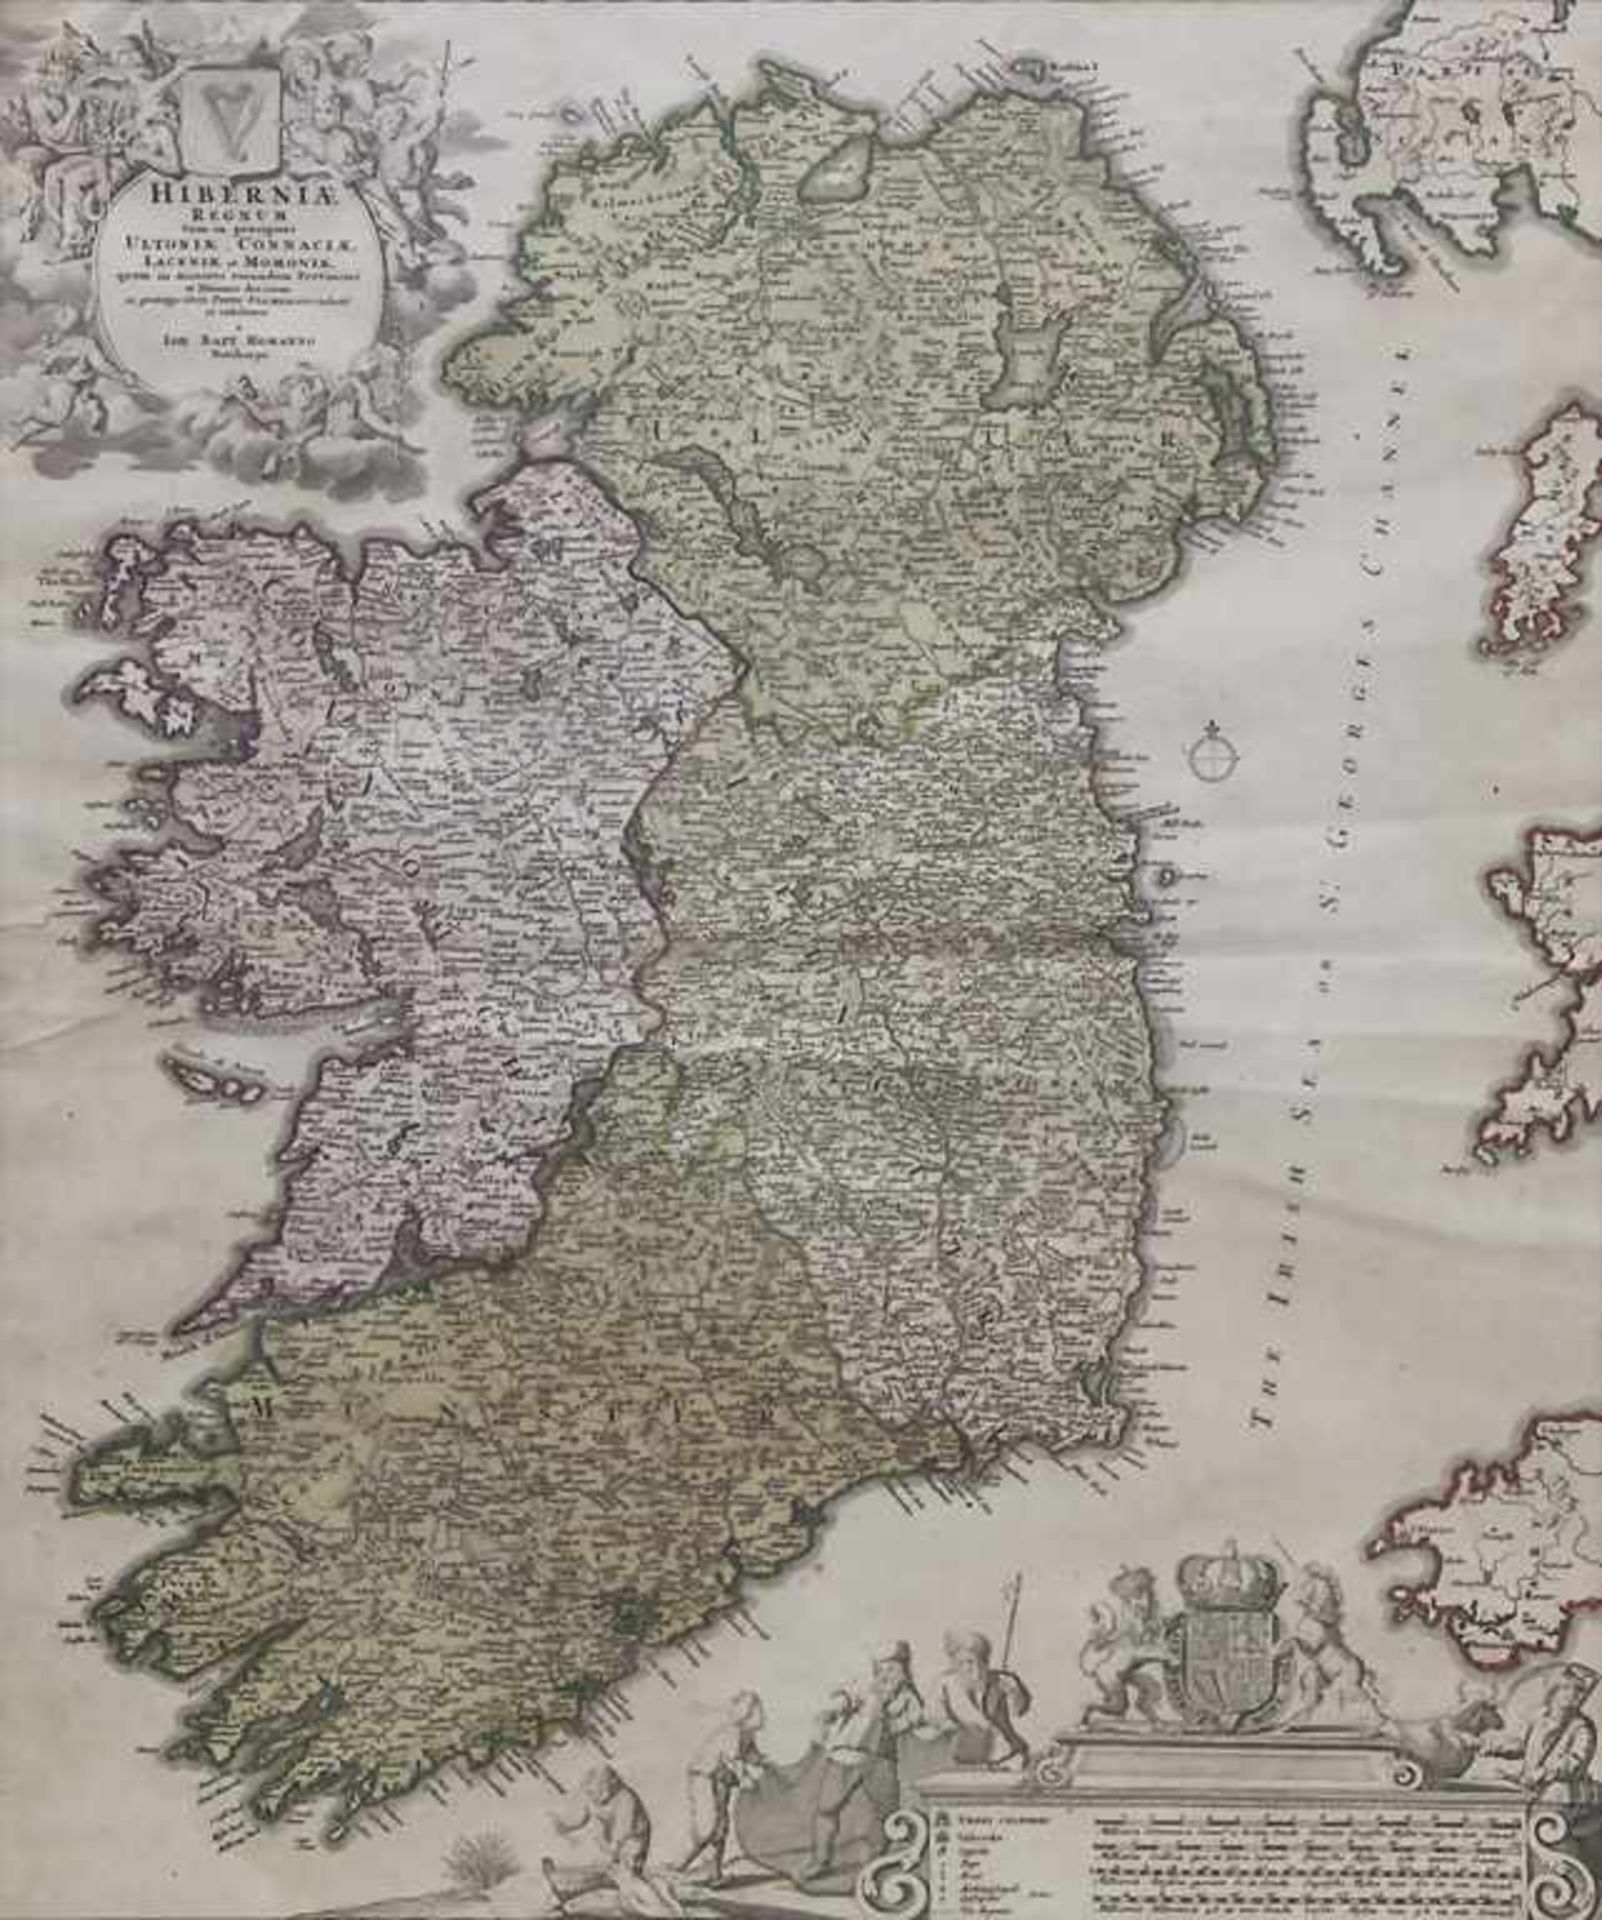 Johann Baptista Homann (1664-1724), 'Historische Karte Irlands' / A historical map of Ireland